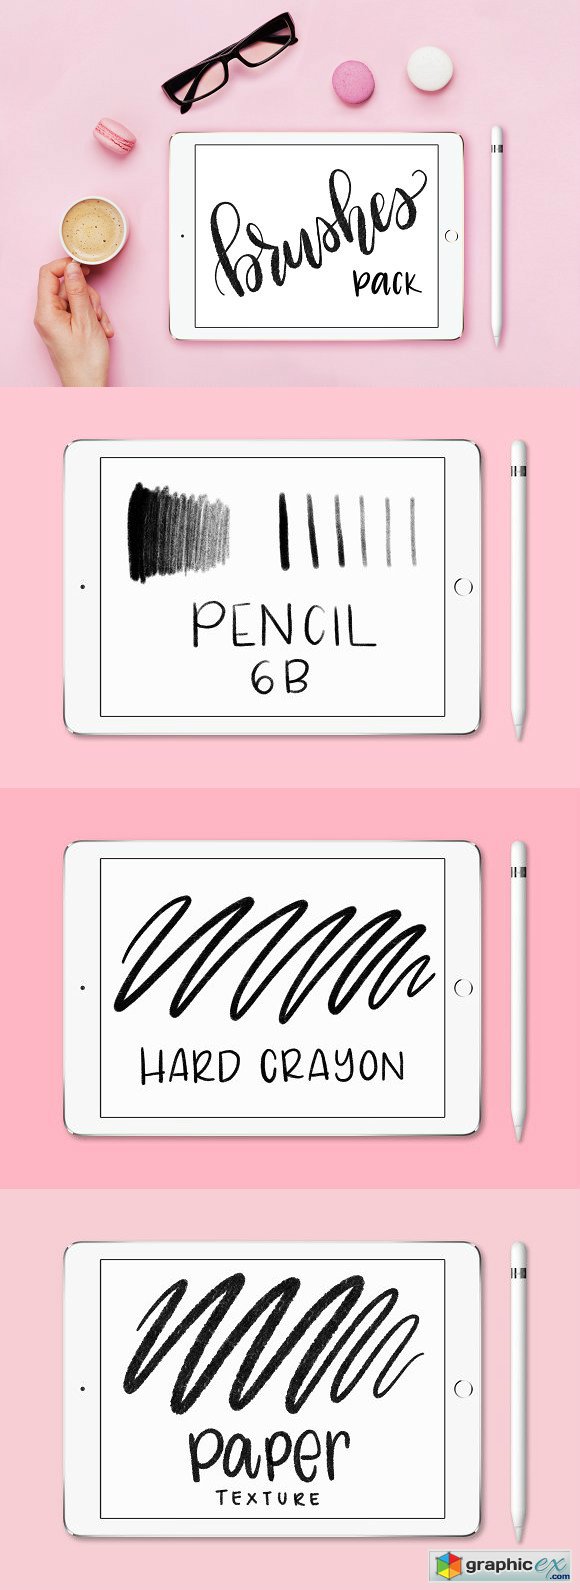 Procreate Crayon Brushes